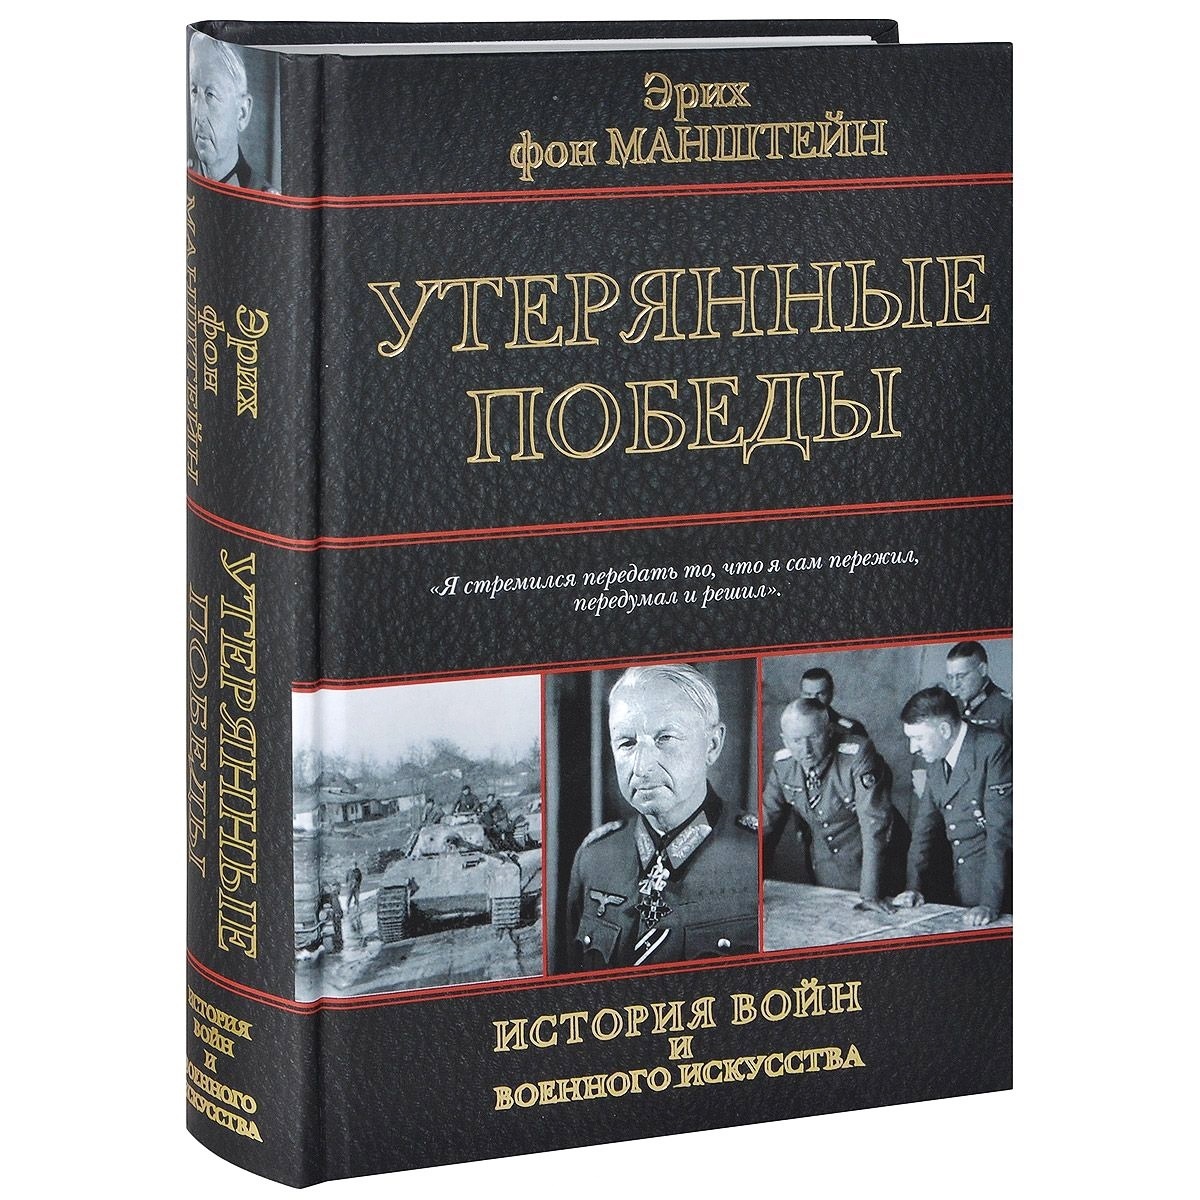 Книга Эриха фон Манштейна «Утерянные победы».